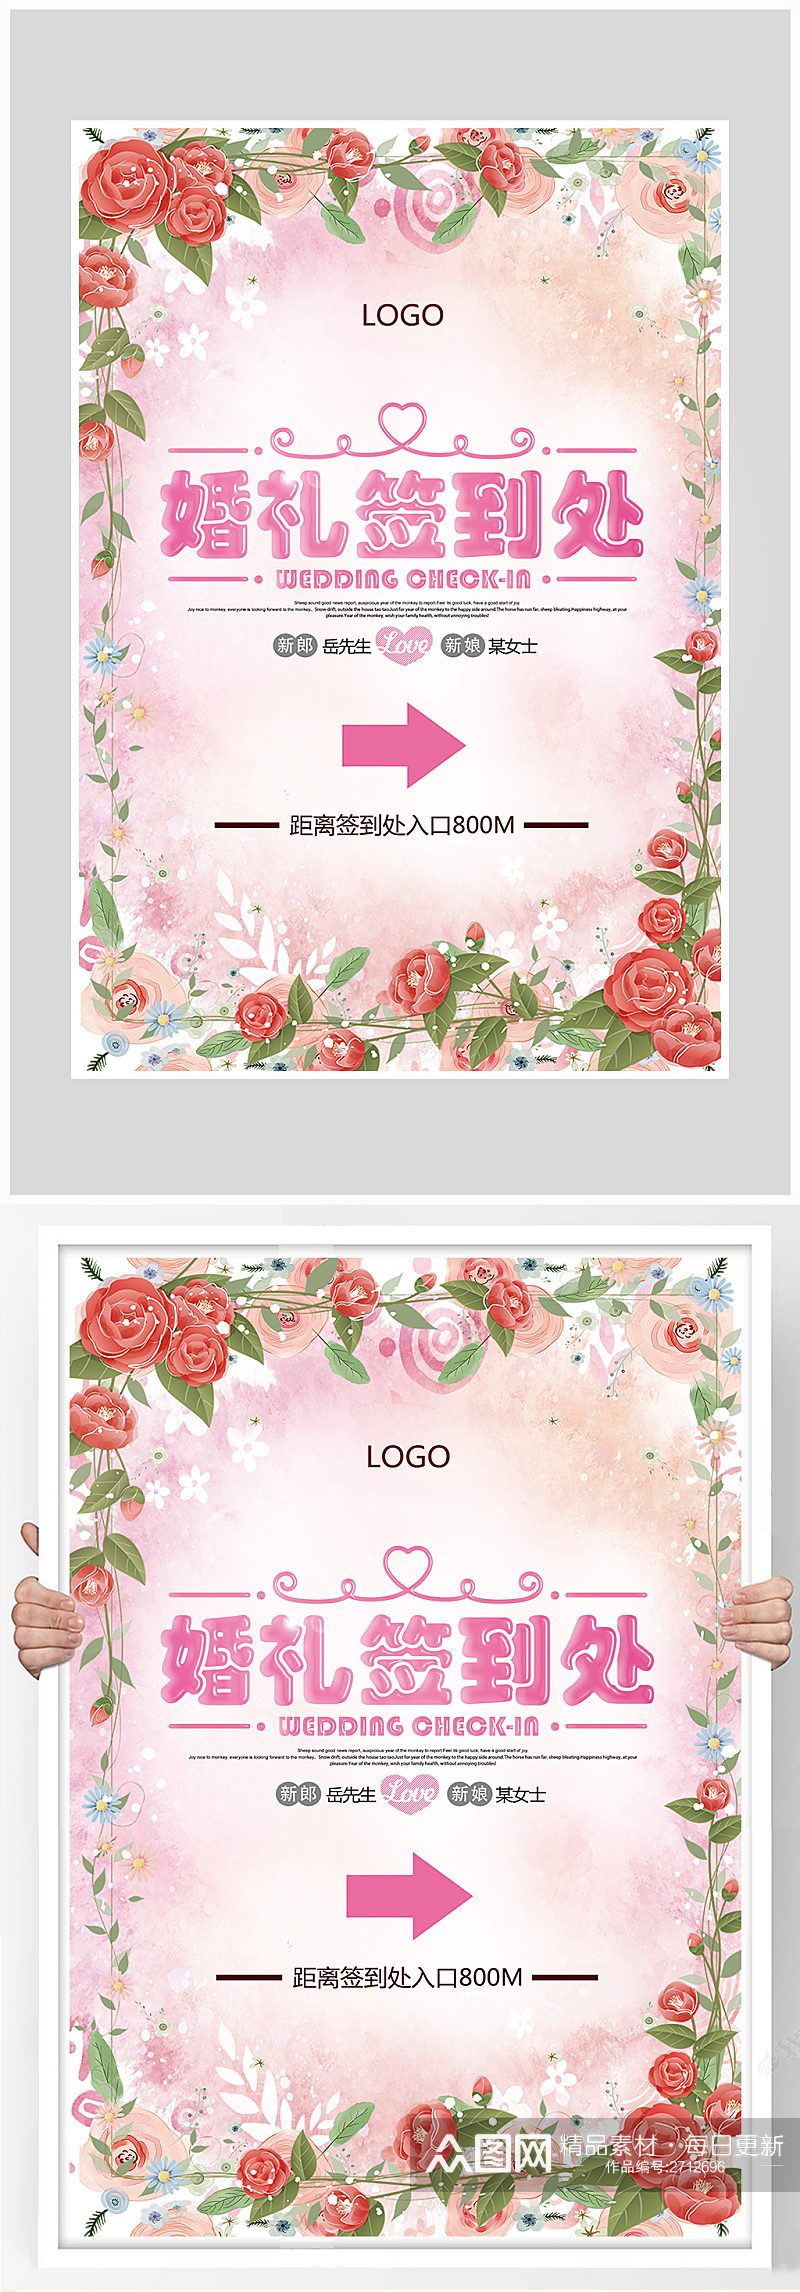 粉色花卉婚礼签到处海报设计素材